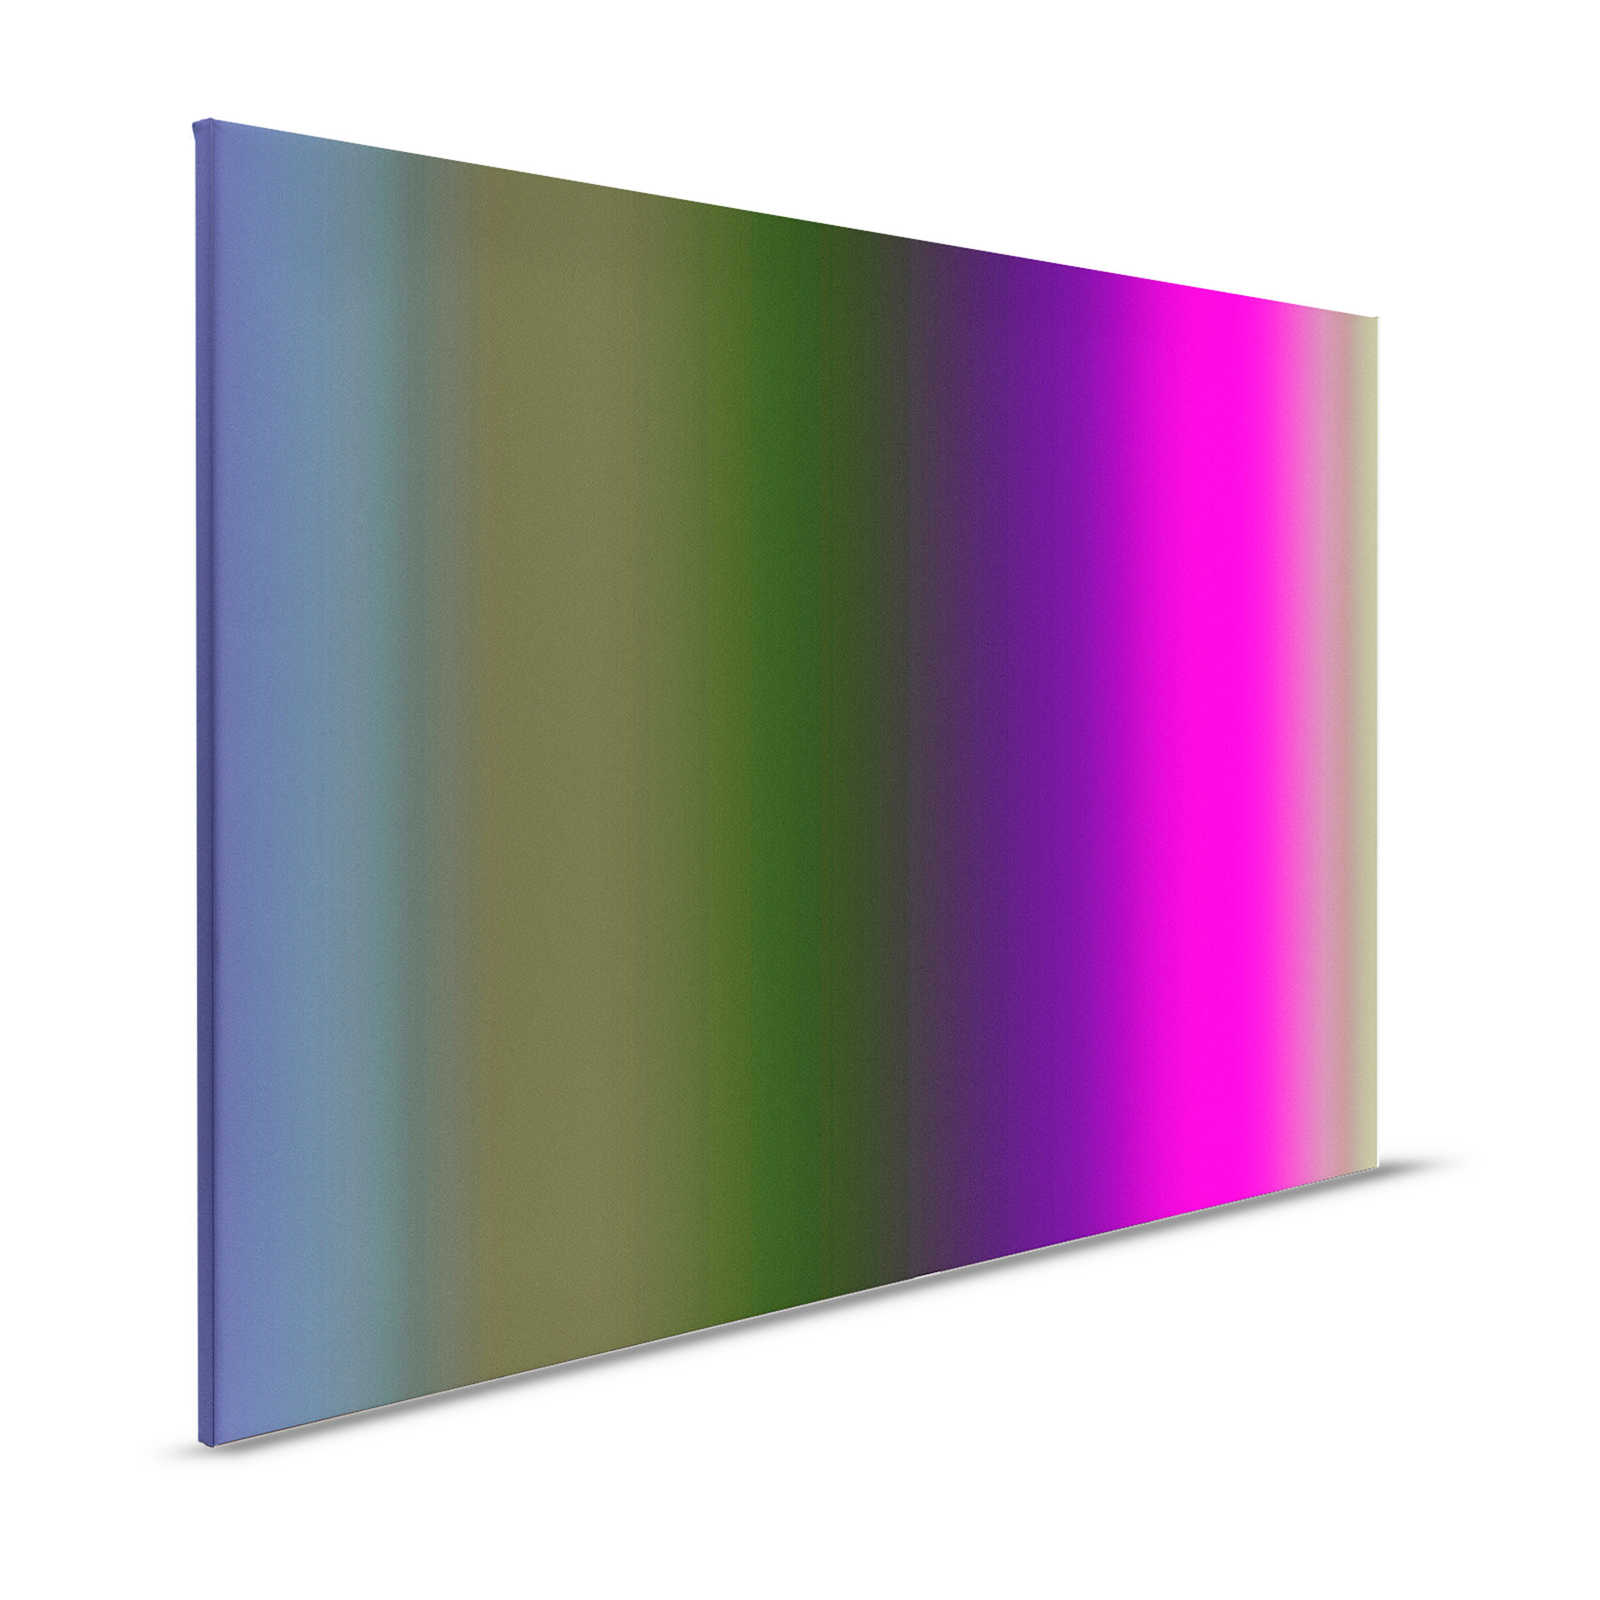 Over the Rainbow 3 - Pintura sobre lienzo espectro de colores abigarrado con rosa neón - 1,20 m x 0,80 m
